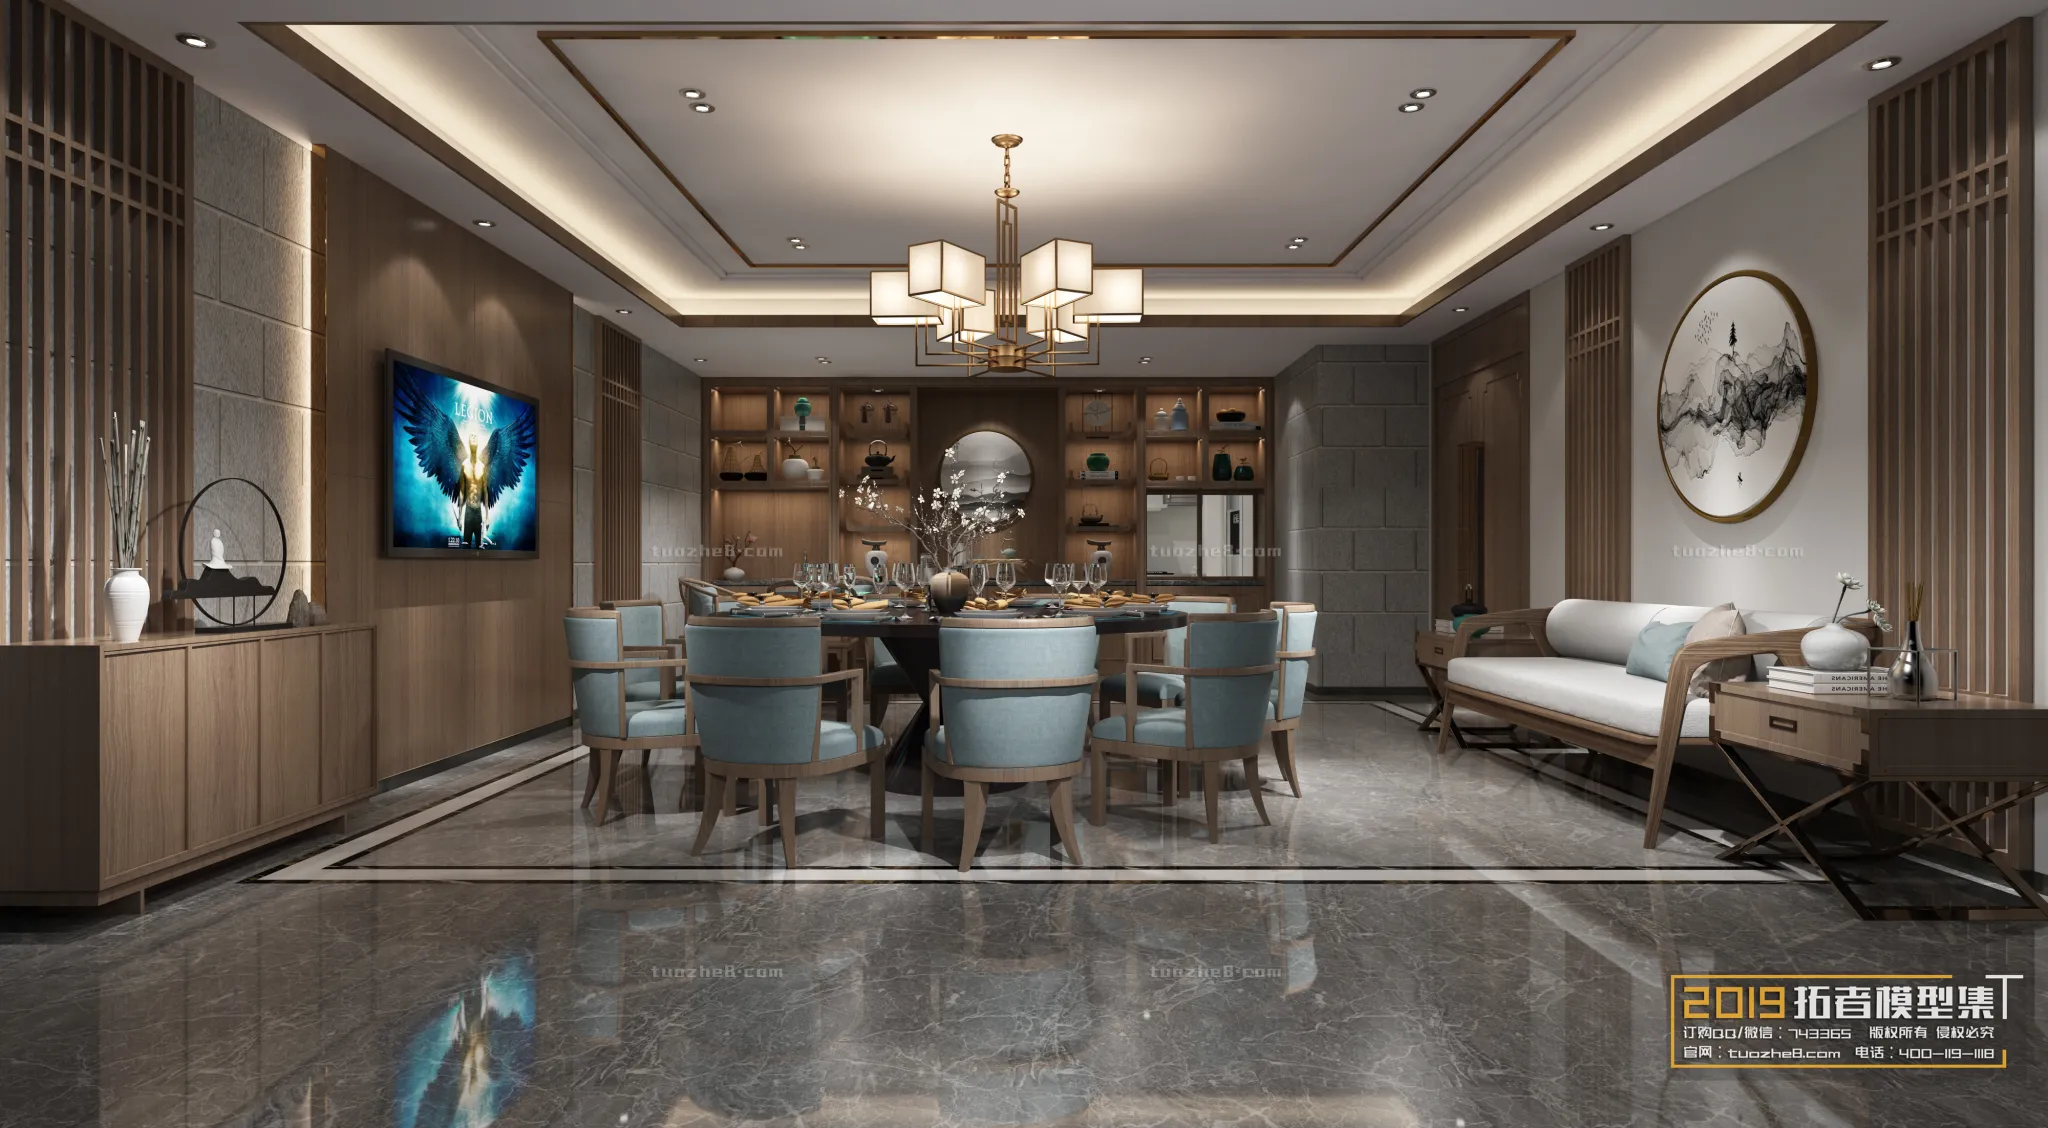 Extension Interior – RESTAURANT DINING – 015